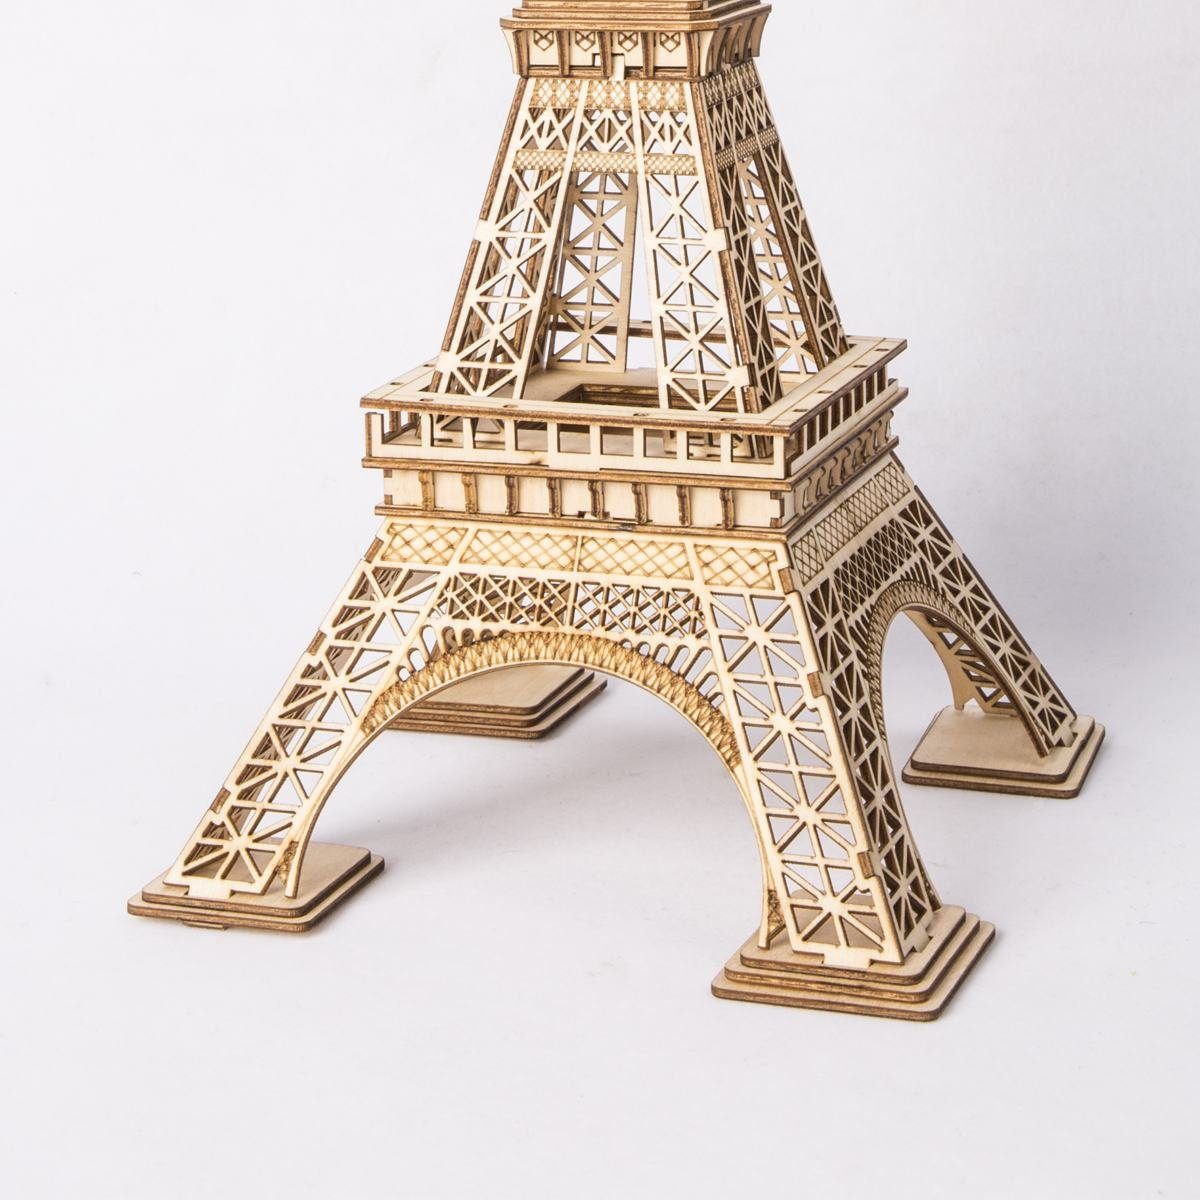 Robotime Modellbausatz Rolife Eiffelturm 121 Teile ROKR 3D-Holzpuzzle TG501